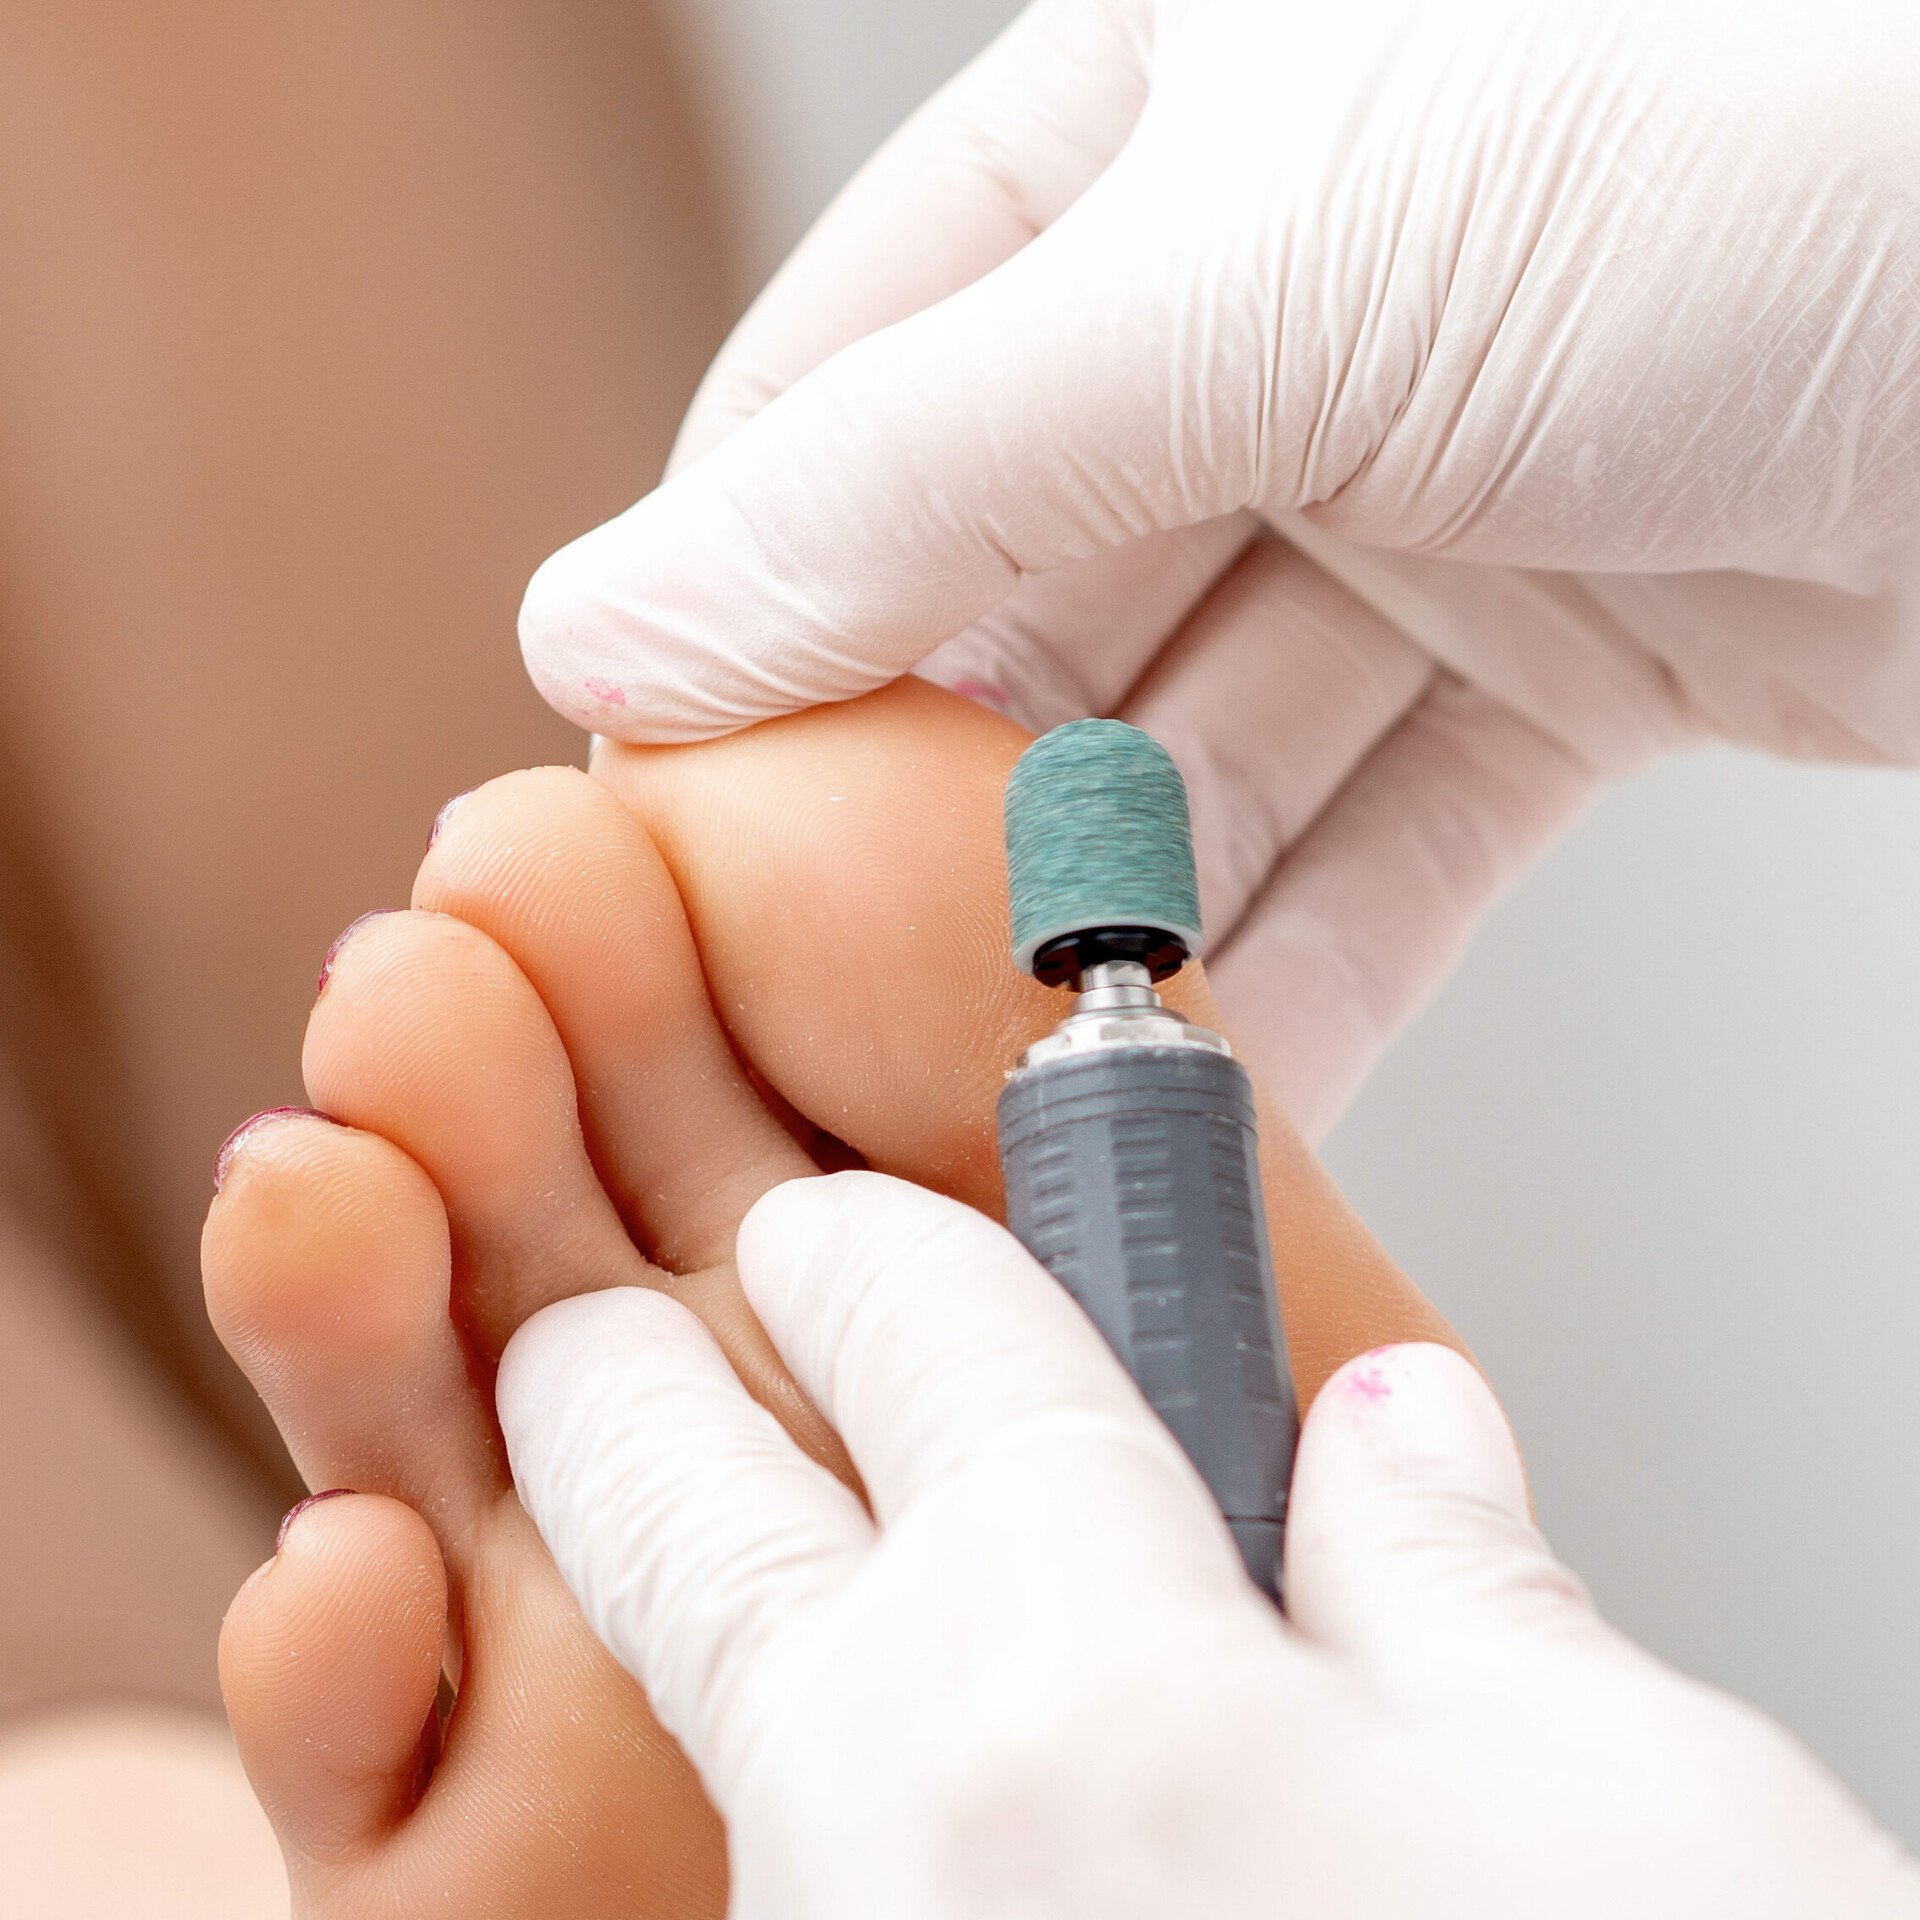 Fußspezialist beim Hornhaut entfernen an den Füßen steht für professionelle Fußpflege.